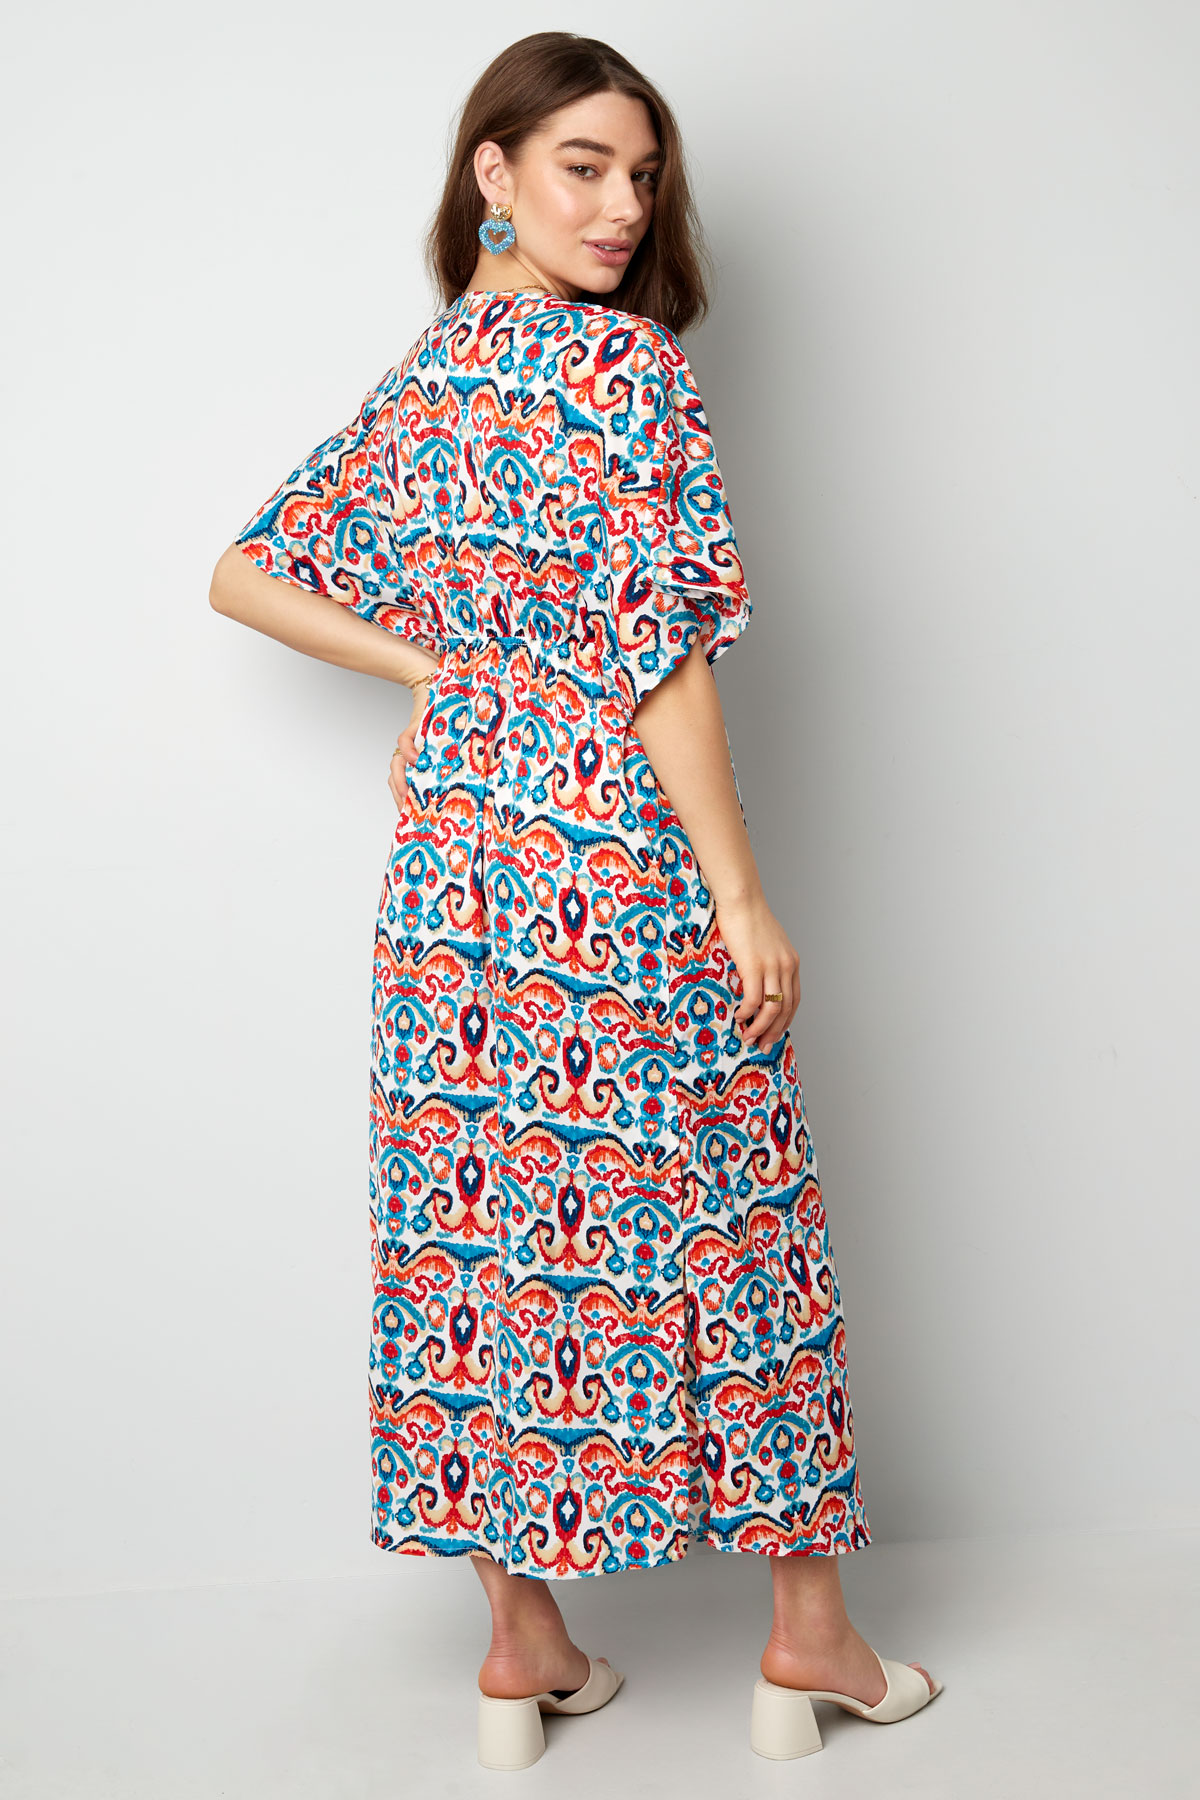 Langes Kleid mit Print - Rot/Blau - S Bild8